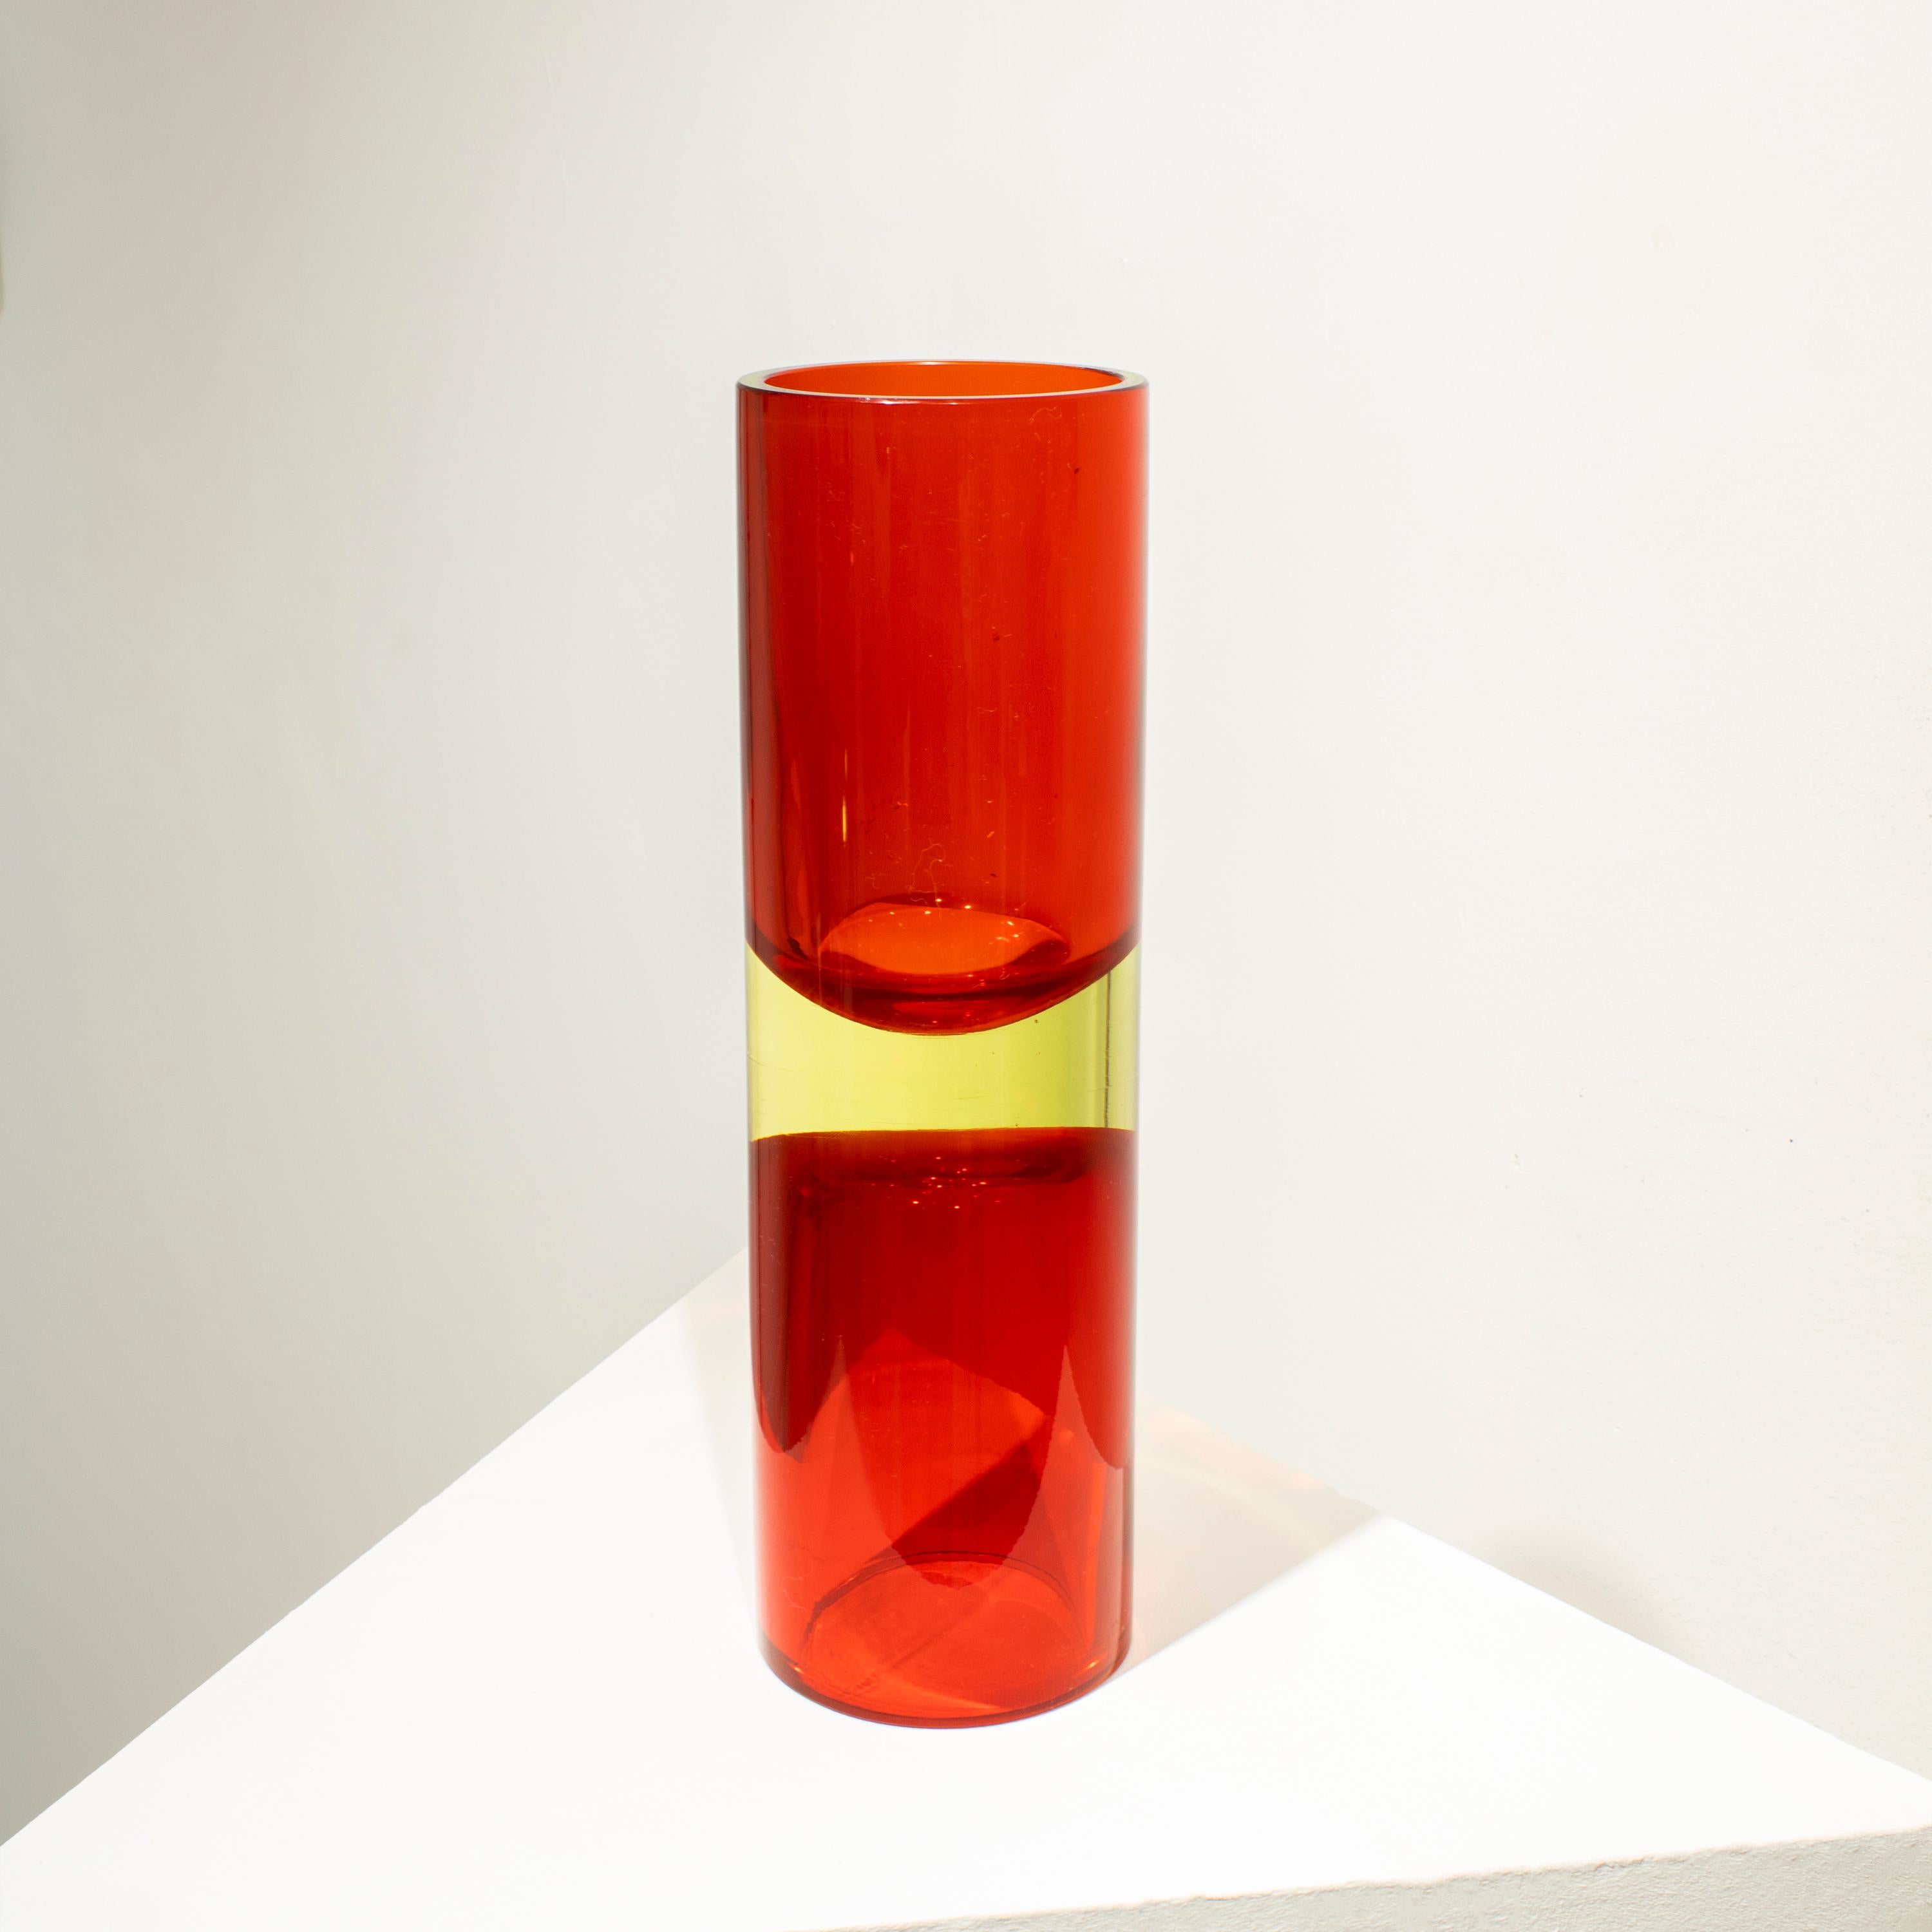 Vase italien conçu dans les années 1970. Le vase est fabriqué à la main en verre de Murano avec une forme cylindrique, en rouge et jaune. 